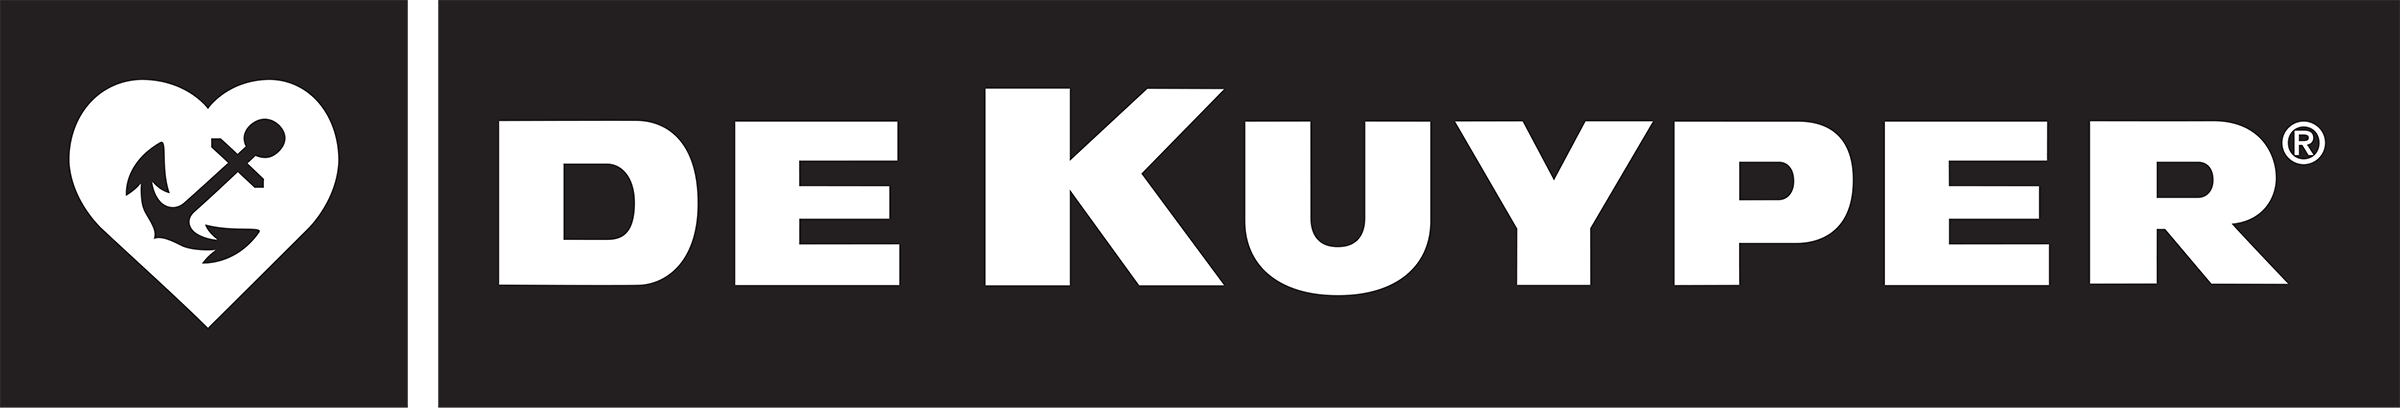 DeKuyper Logo